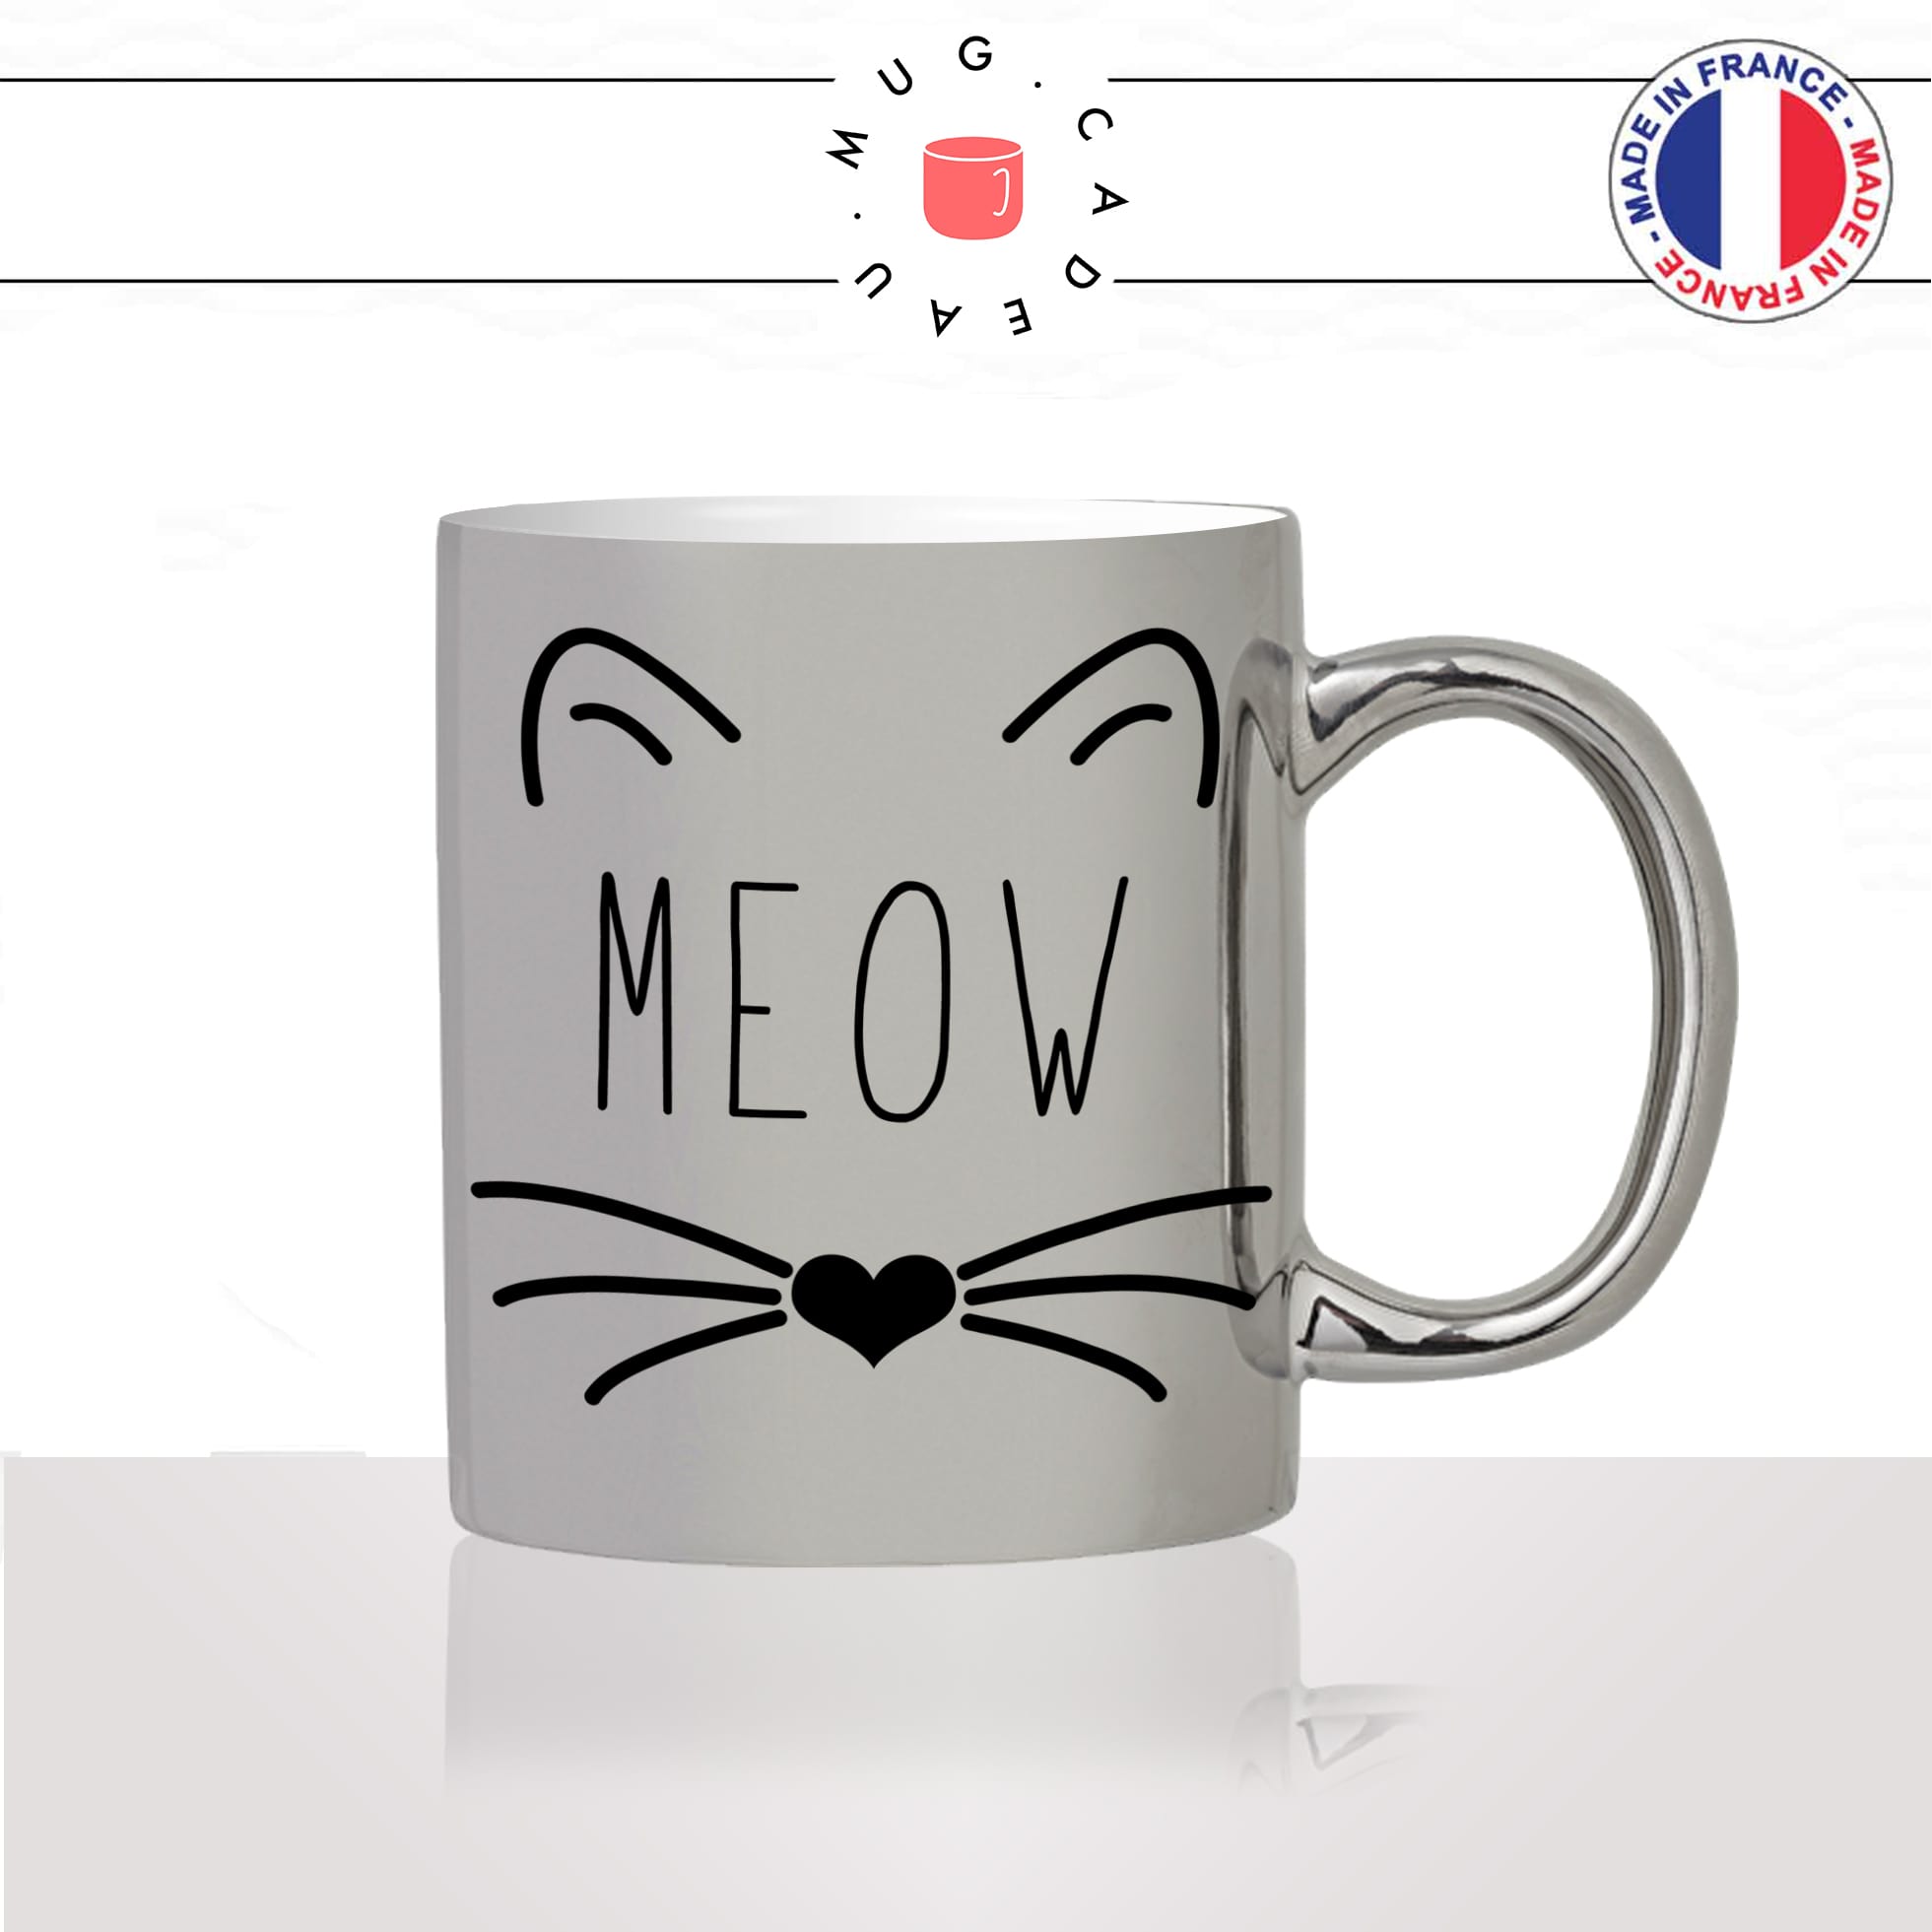 mug-tasse-argenté-silver-meow-miam-tete-moustache-truffe-chat-mignon-animal-chaton-noir-fun-café-thé-idée-cadeau-original-personnalisé2-min